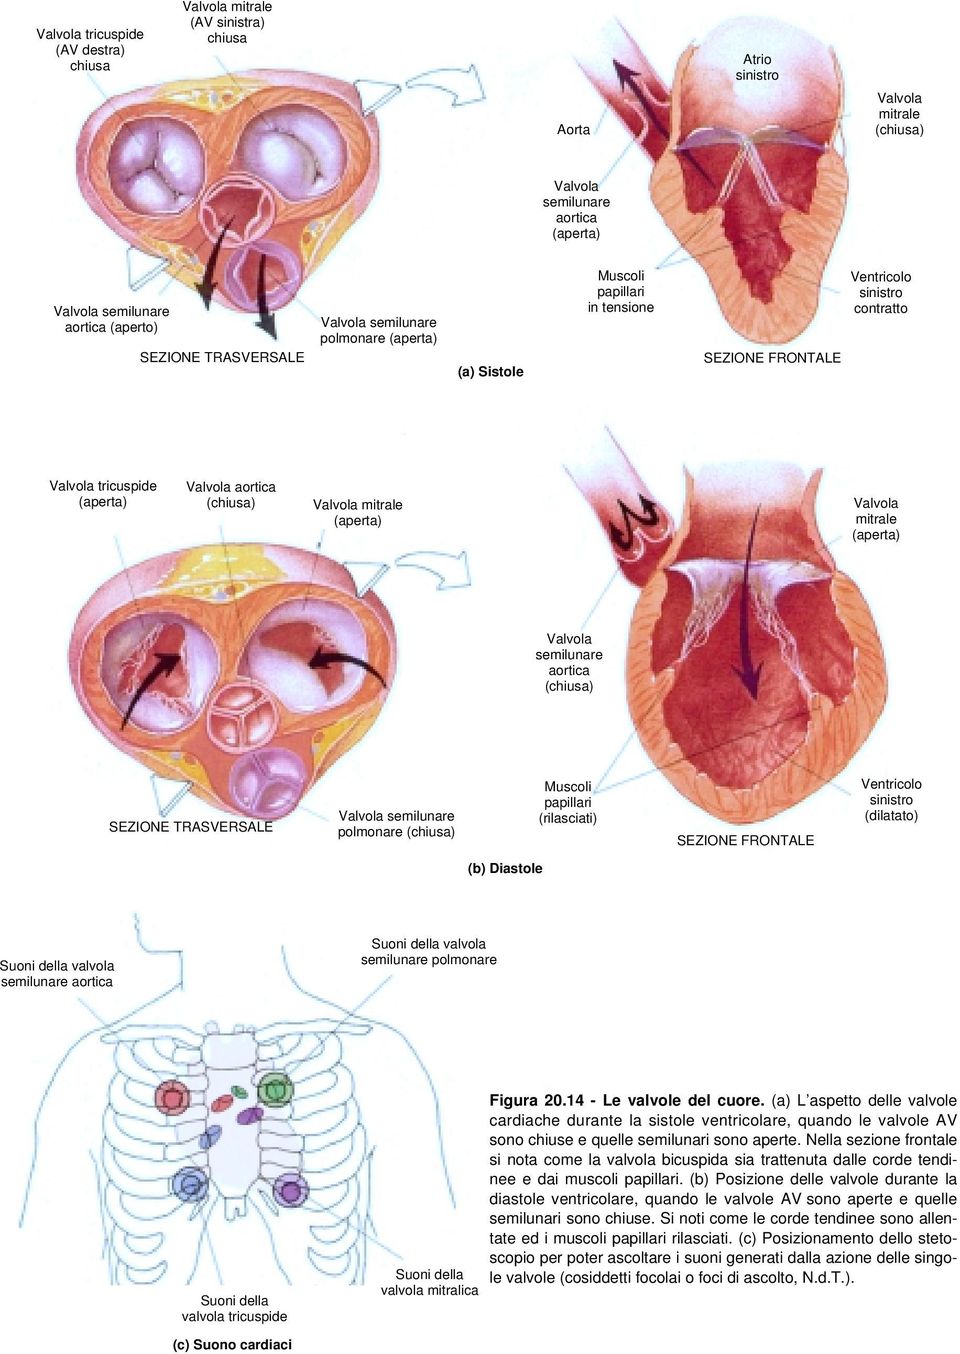 Valvola mitrale (aperta) Valvola mitrale (aperta) Valvola semilunare aortica (chiusa) SEZIONE TRASVERSALE Valvola semilunare polmonare (chiusa) Muscoli papillari (rilasciati) SEZIONE FRONTALE